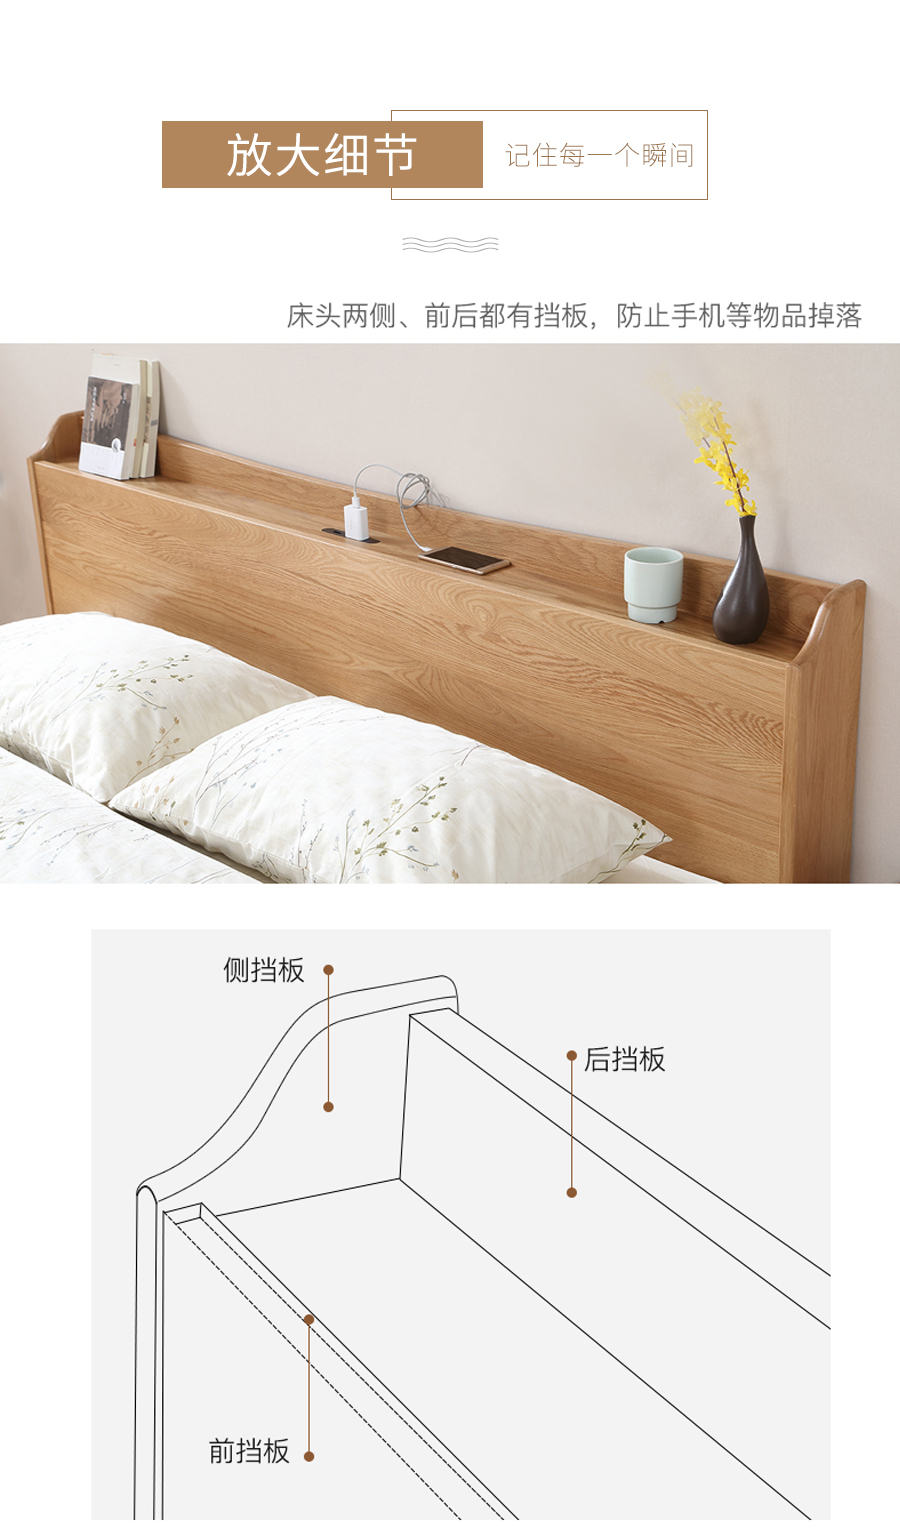 星空梵高 现代简约双人床白橡木床 木色生香 906插座床